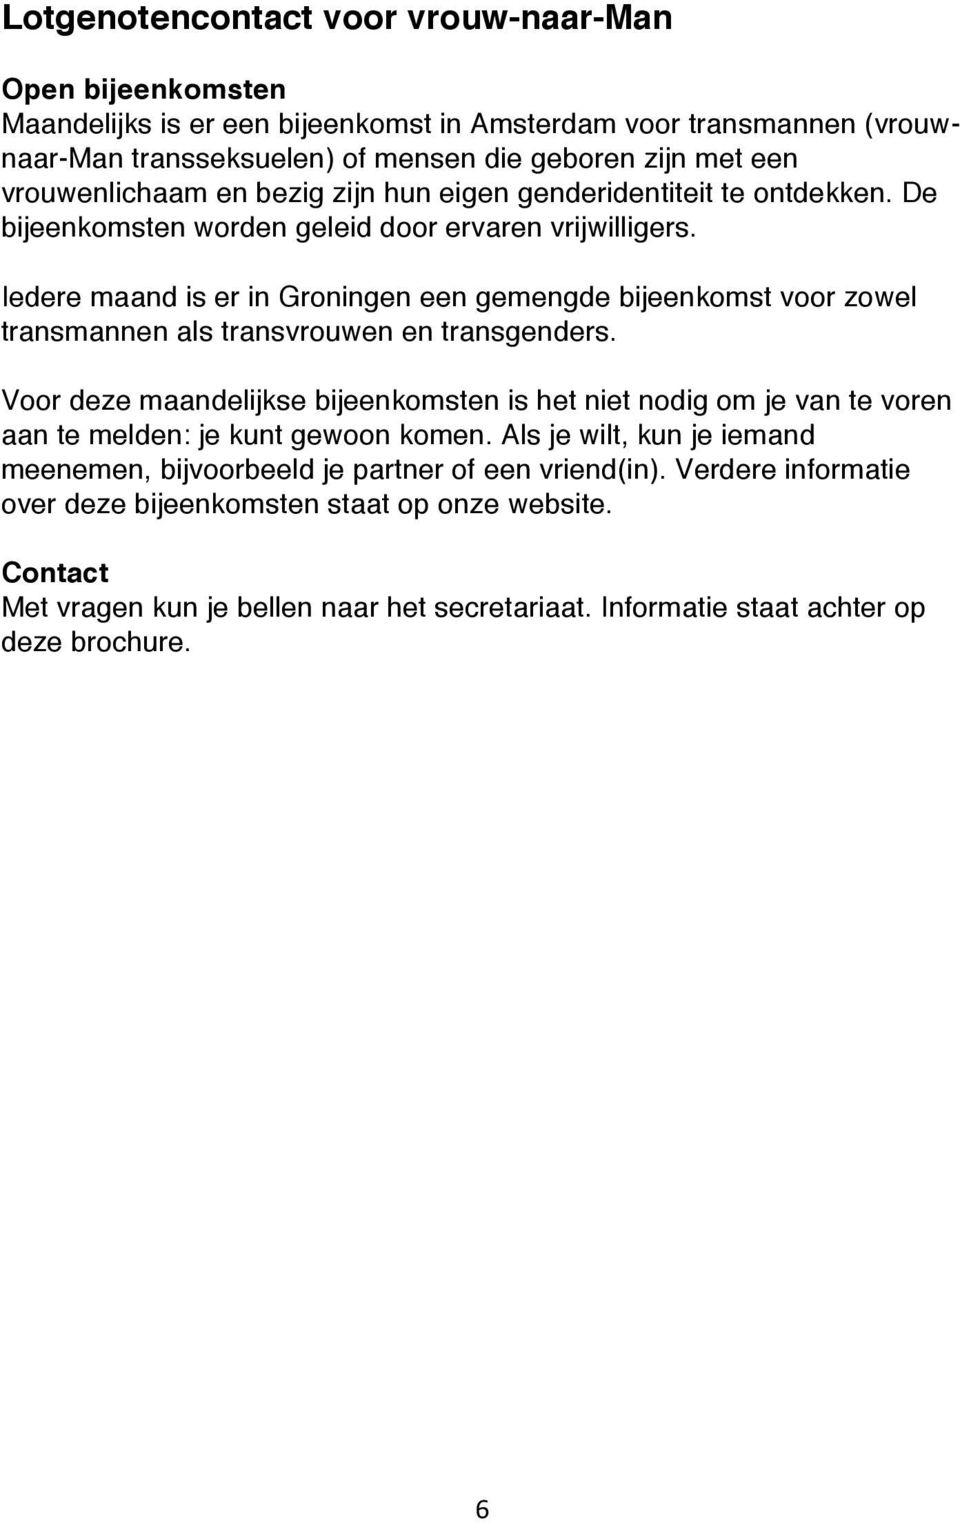 Iedere maand is er in Groningen een gemengde bijeenkomst voor zowel transmannen als transvrouwen en transgenders.